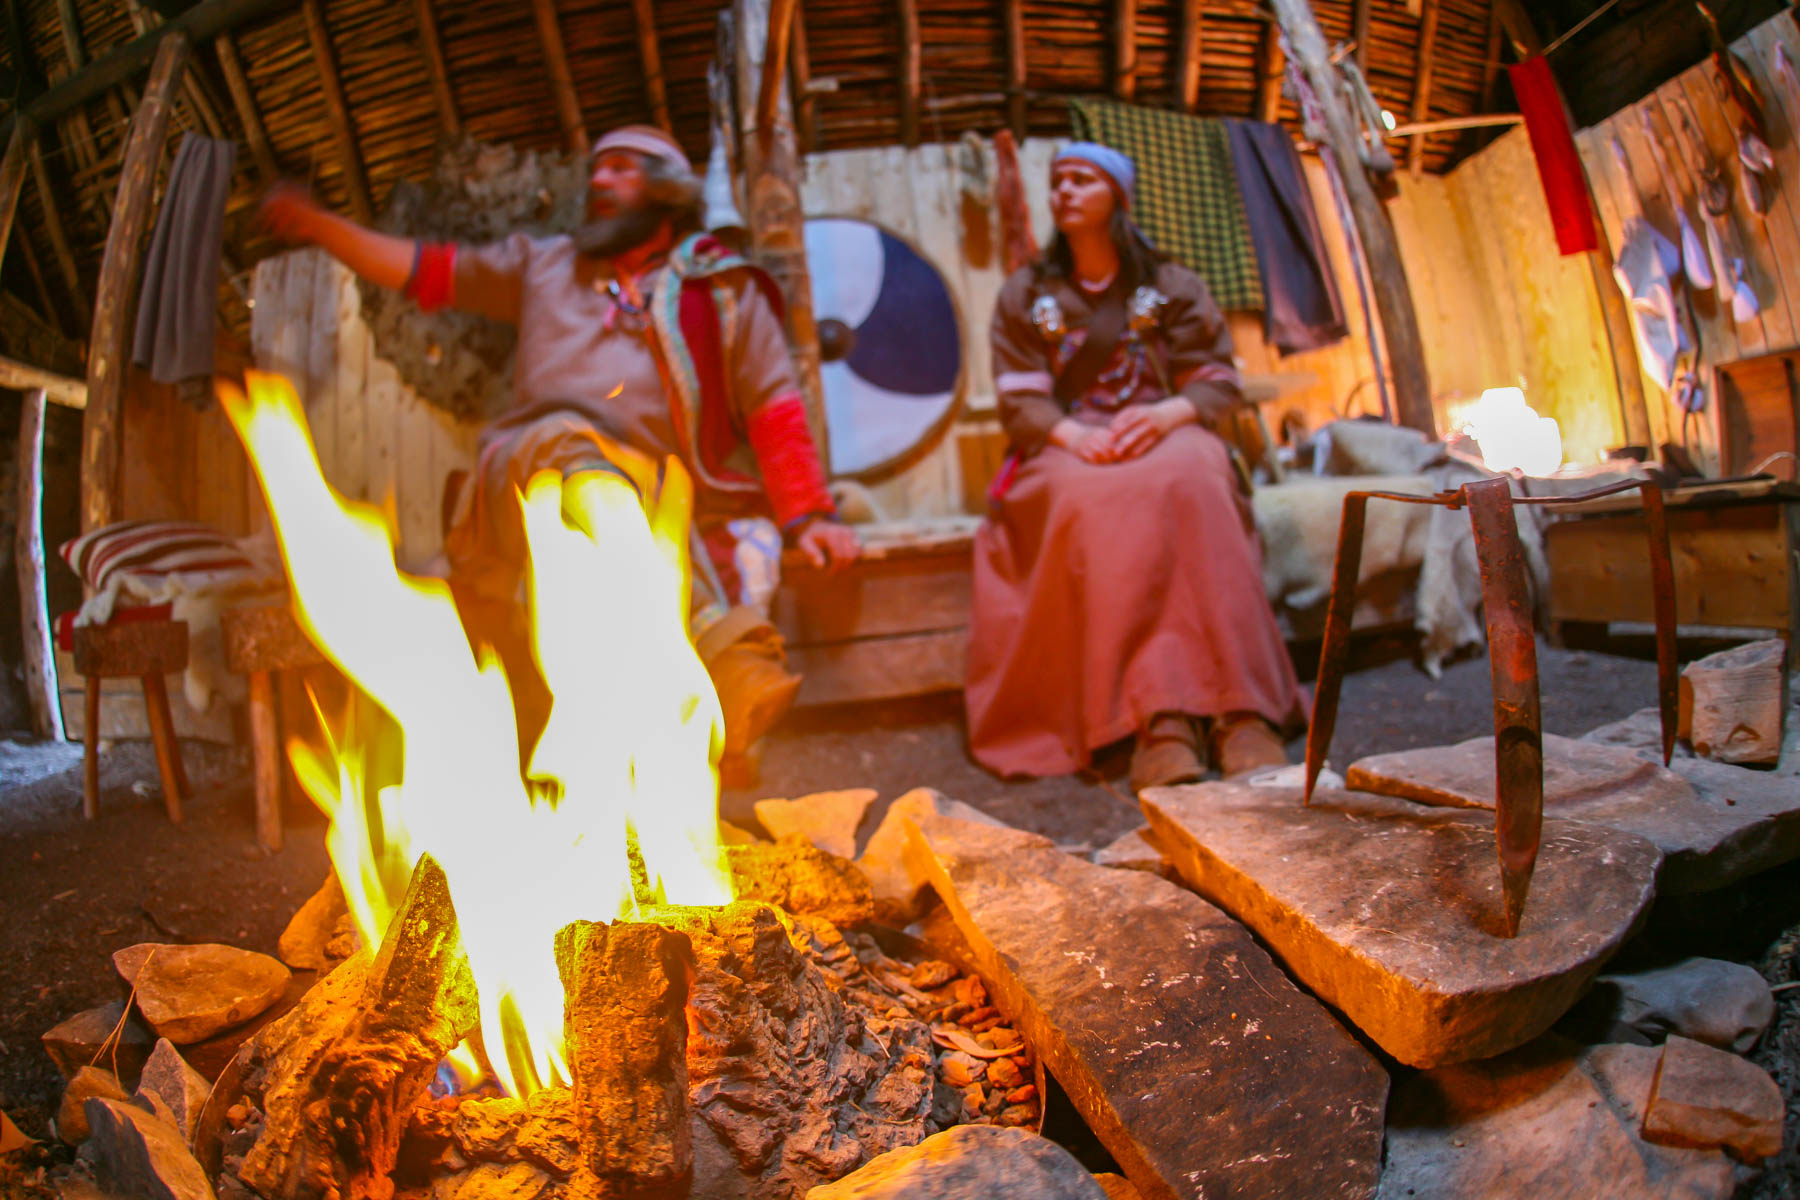 Un feu à l’intérieur d’une maison traditionnelle viking avec un homme et une femme vêtue en costume d’époque.